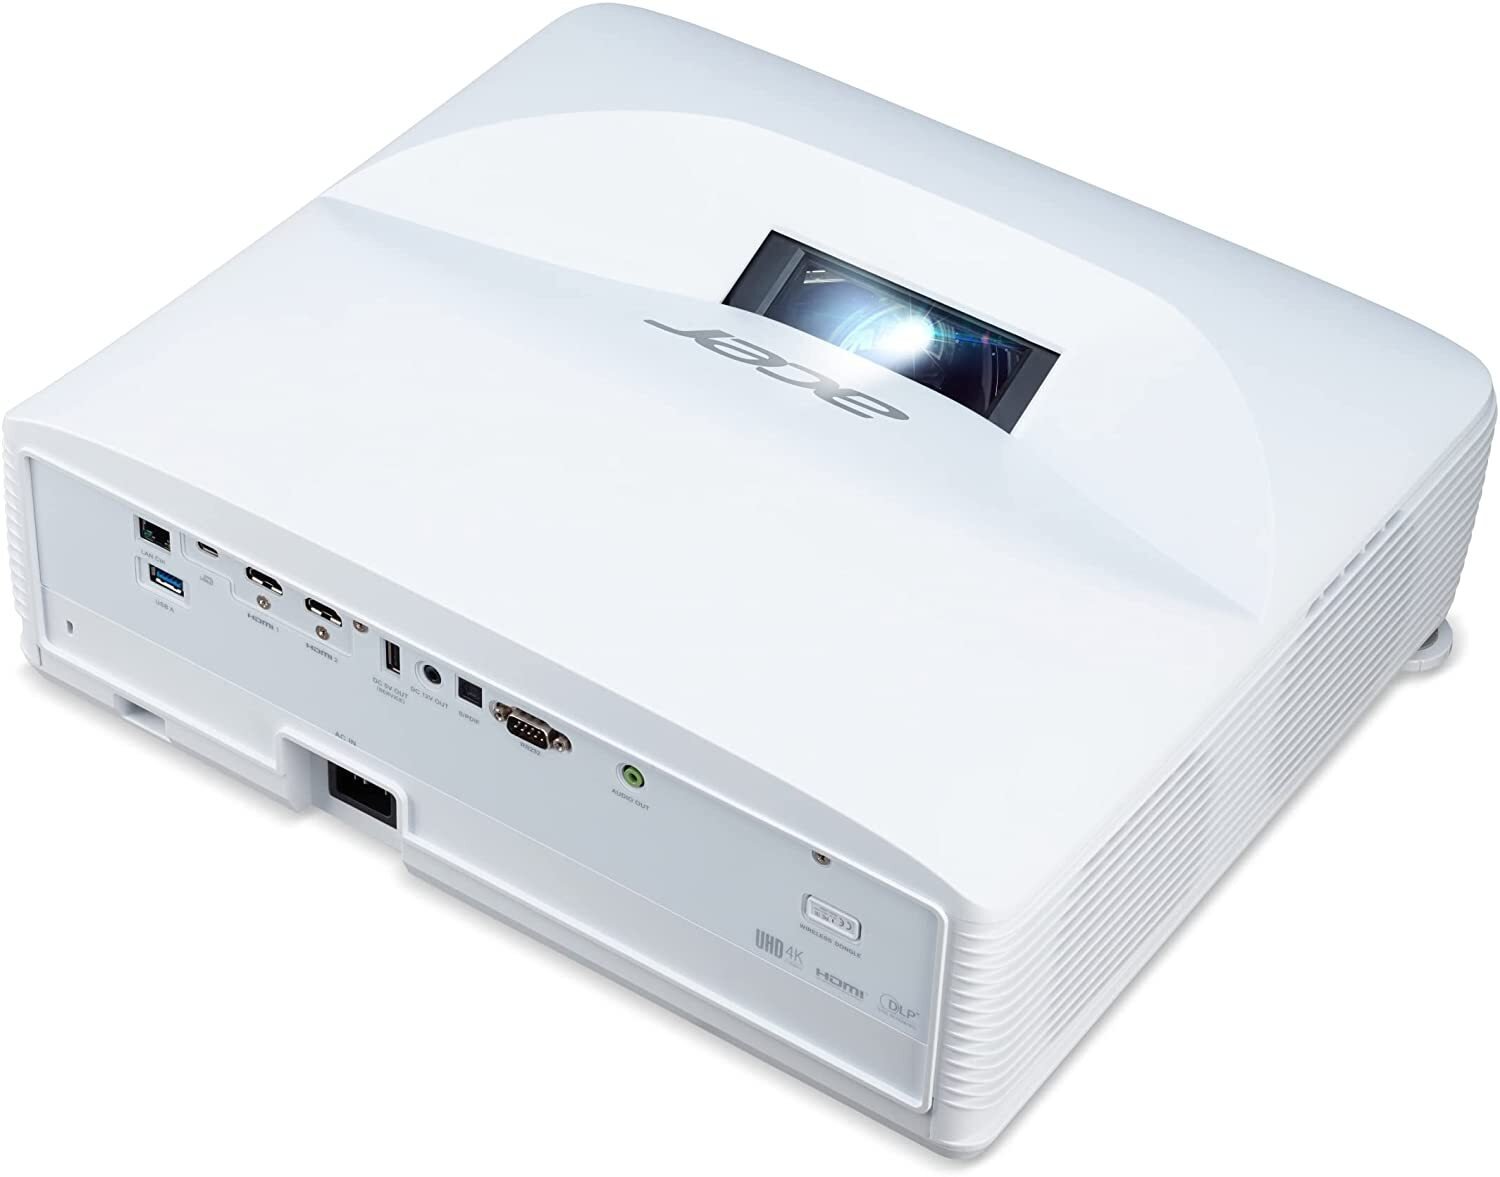 Ультракороткофокусний проектор Acer L811 (DLP, UHD, 3000 lm, LASER) WiFi, Aptoide (MR.JUC11.001)фото5